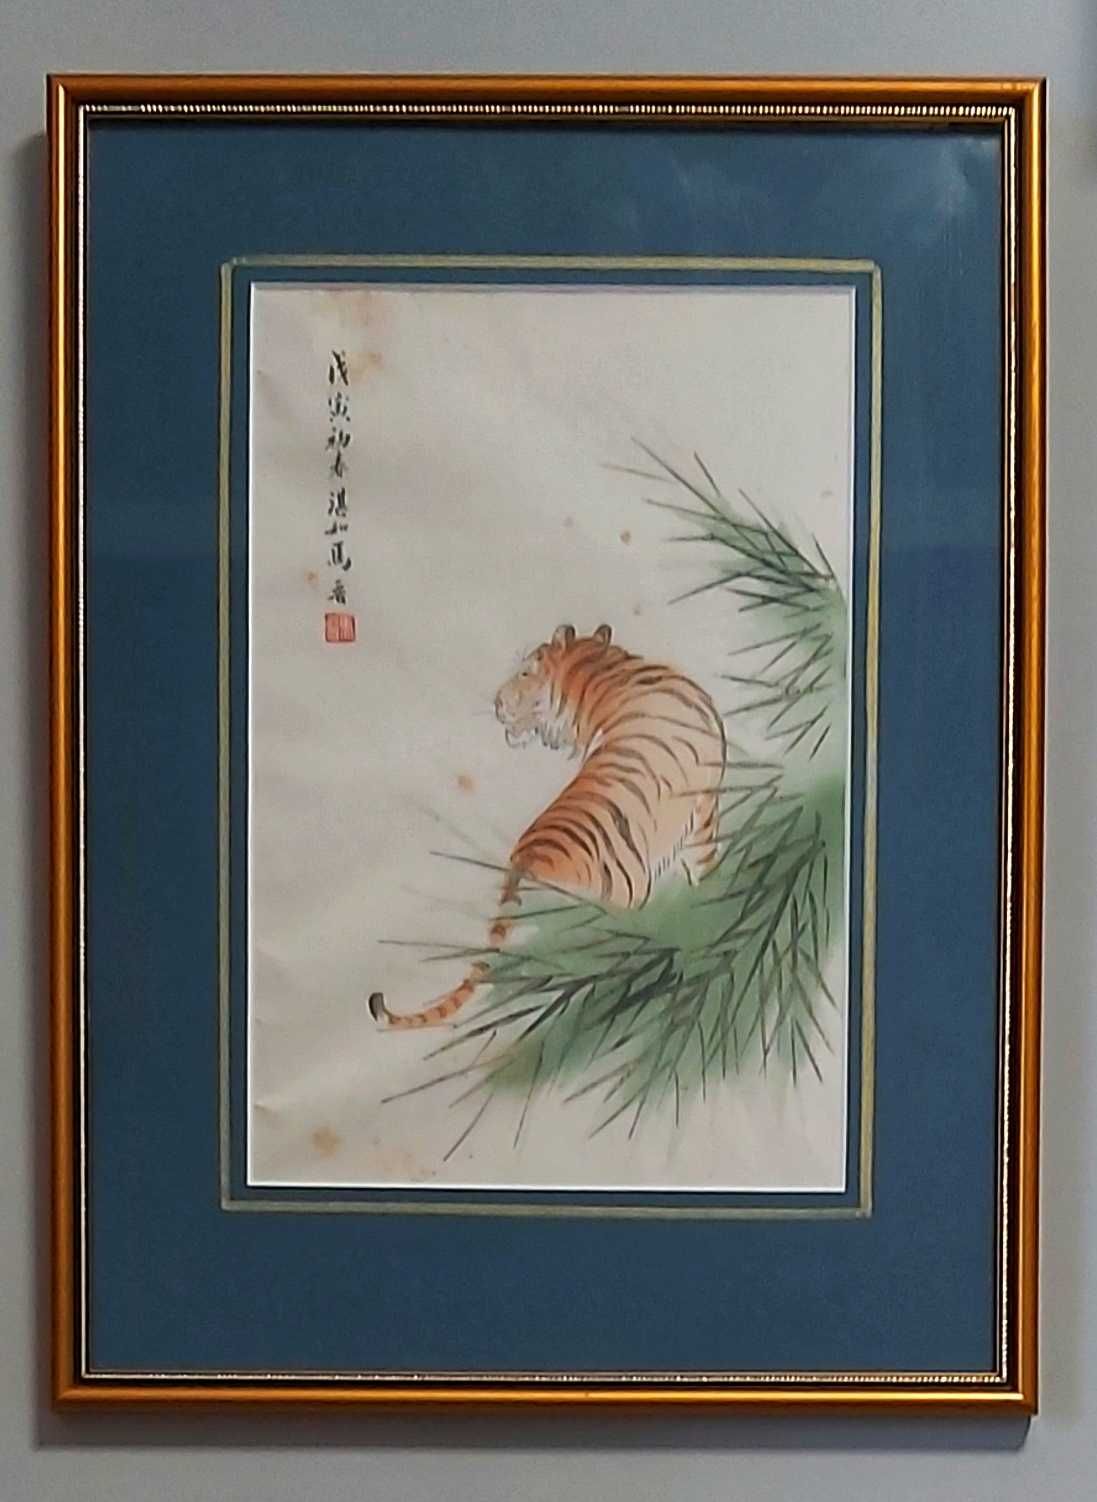 Tygrys - Drzeworyt chiński, Qi Baishi, 1951 r.